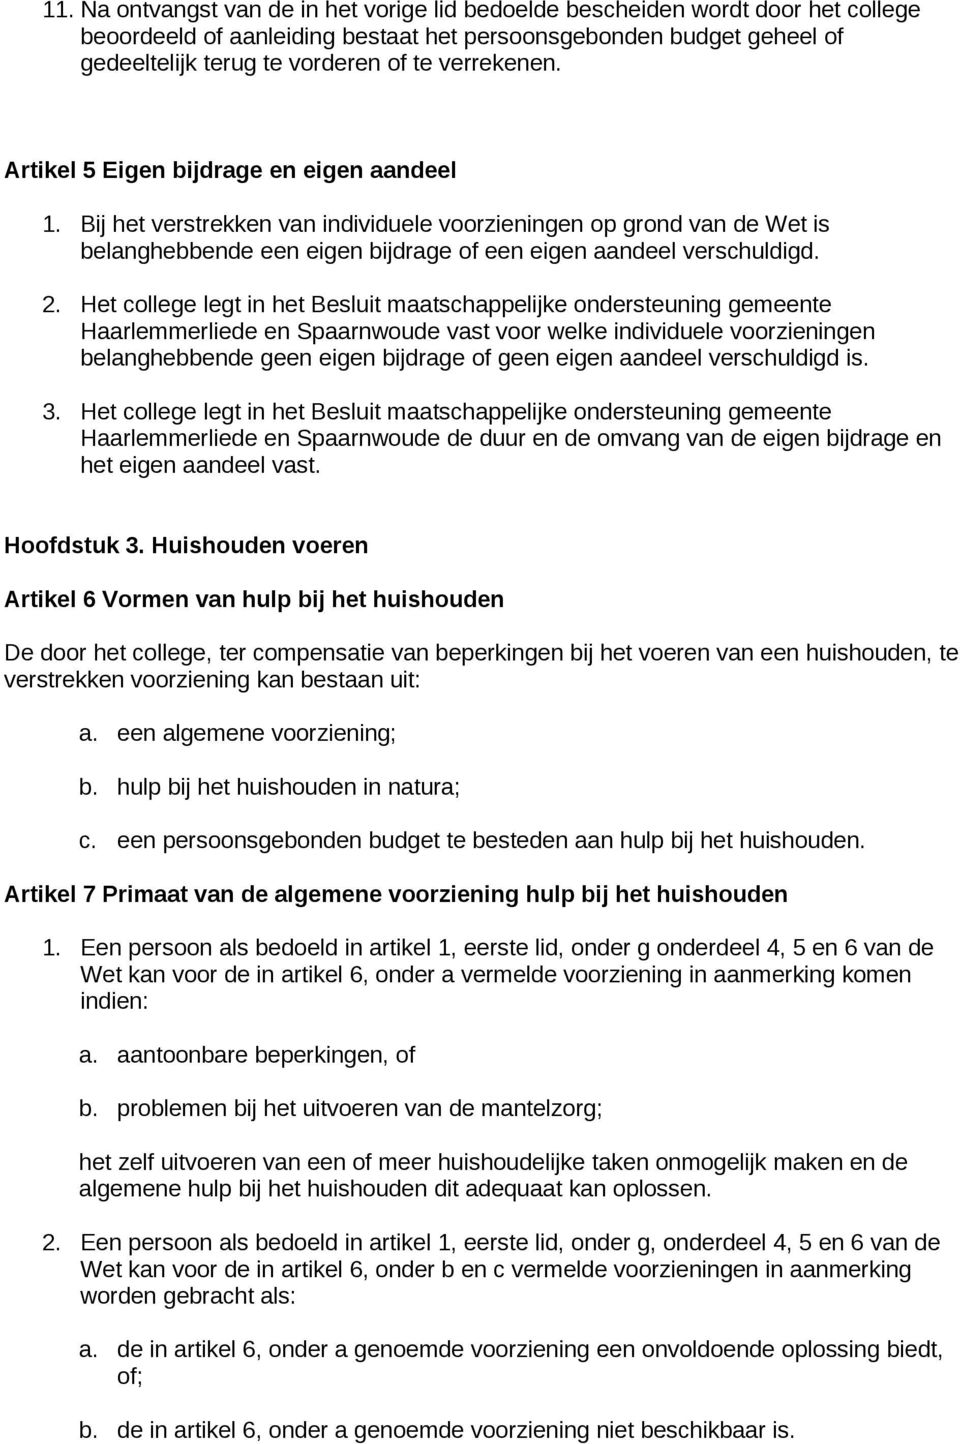 2. Het college legt in het Besluit maatschappelijke ondersteuning gemeente Haarlemmerliede en Spaarnwoude vast voor welke individuele voorzieningen belanghebbende geen eigen bijdrage of geen eigen